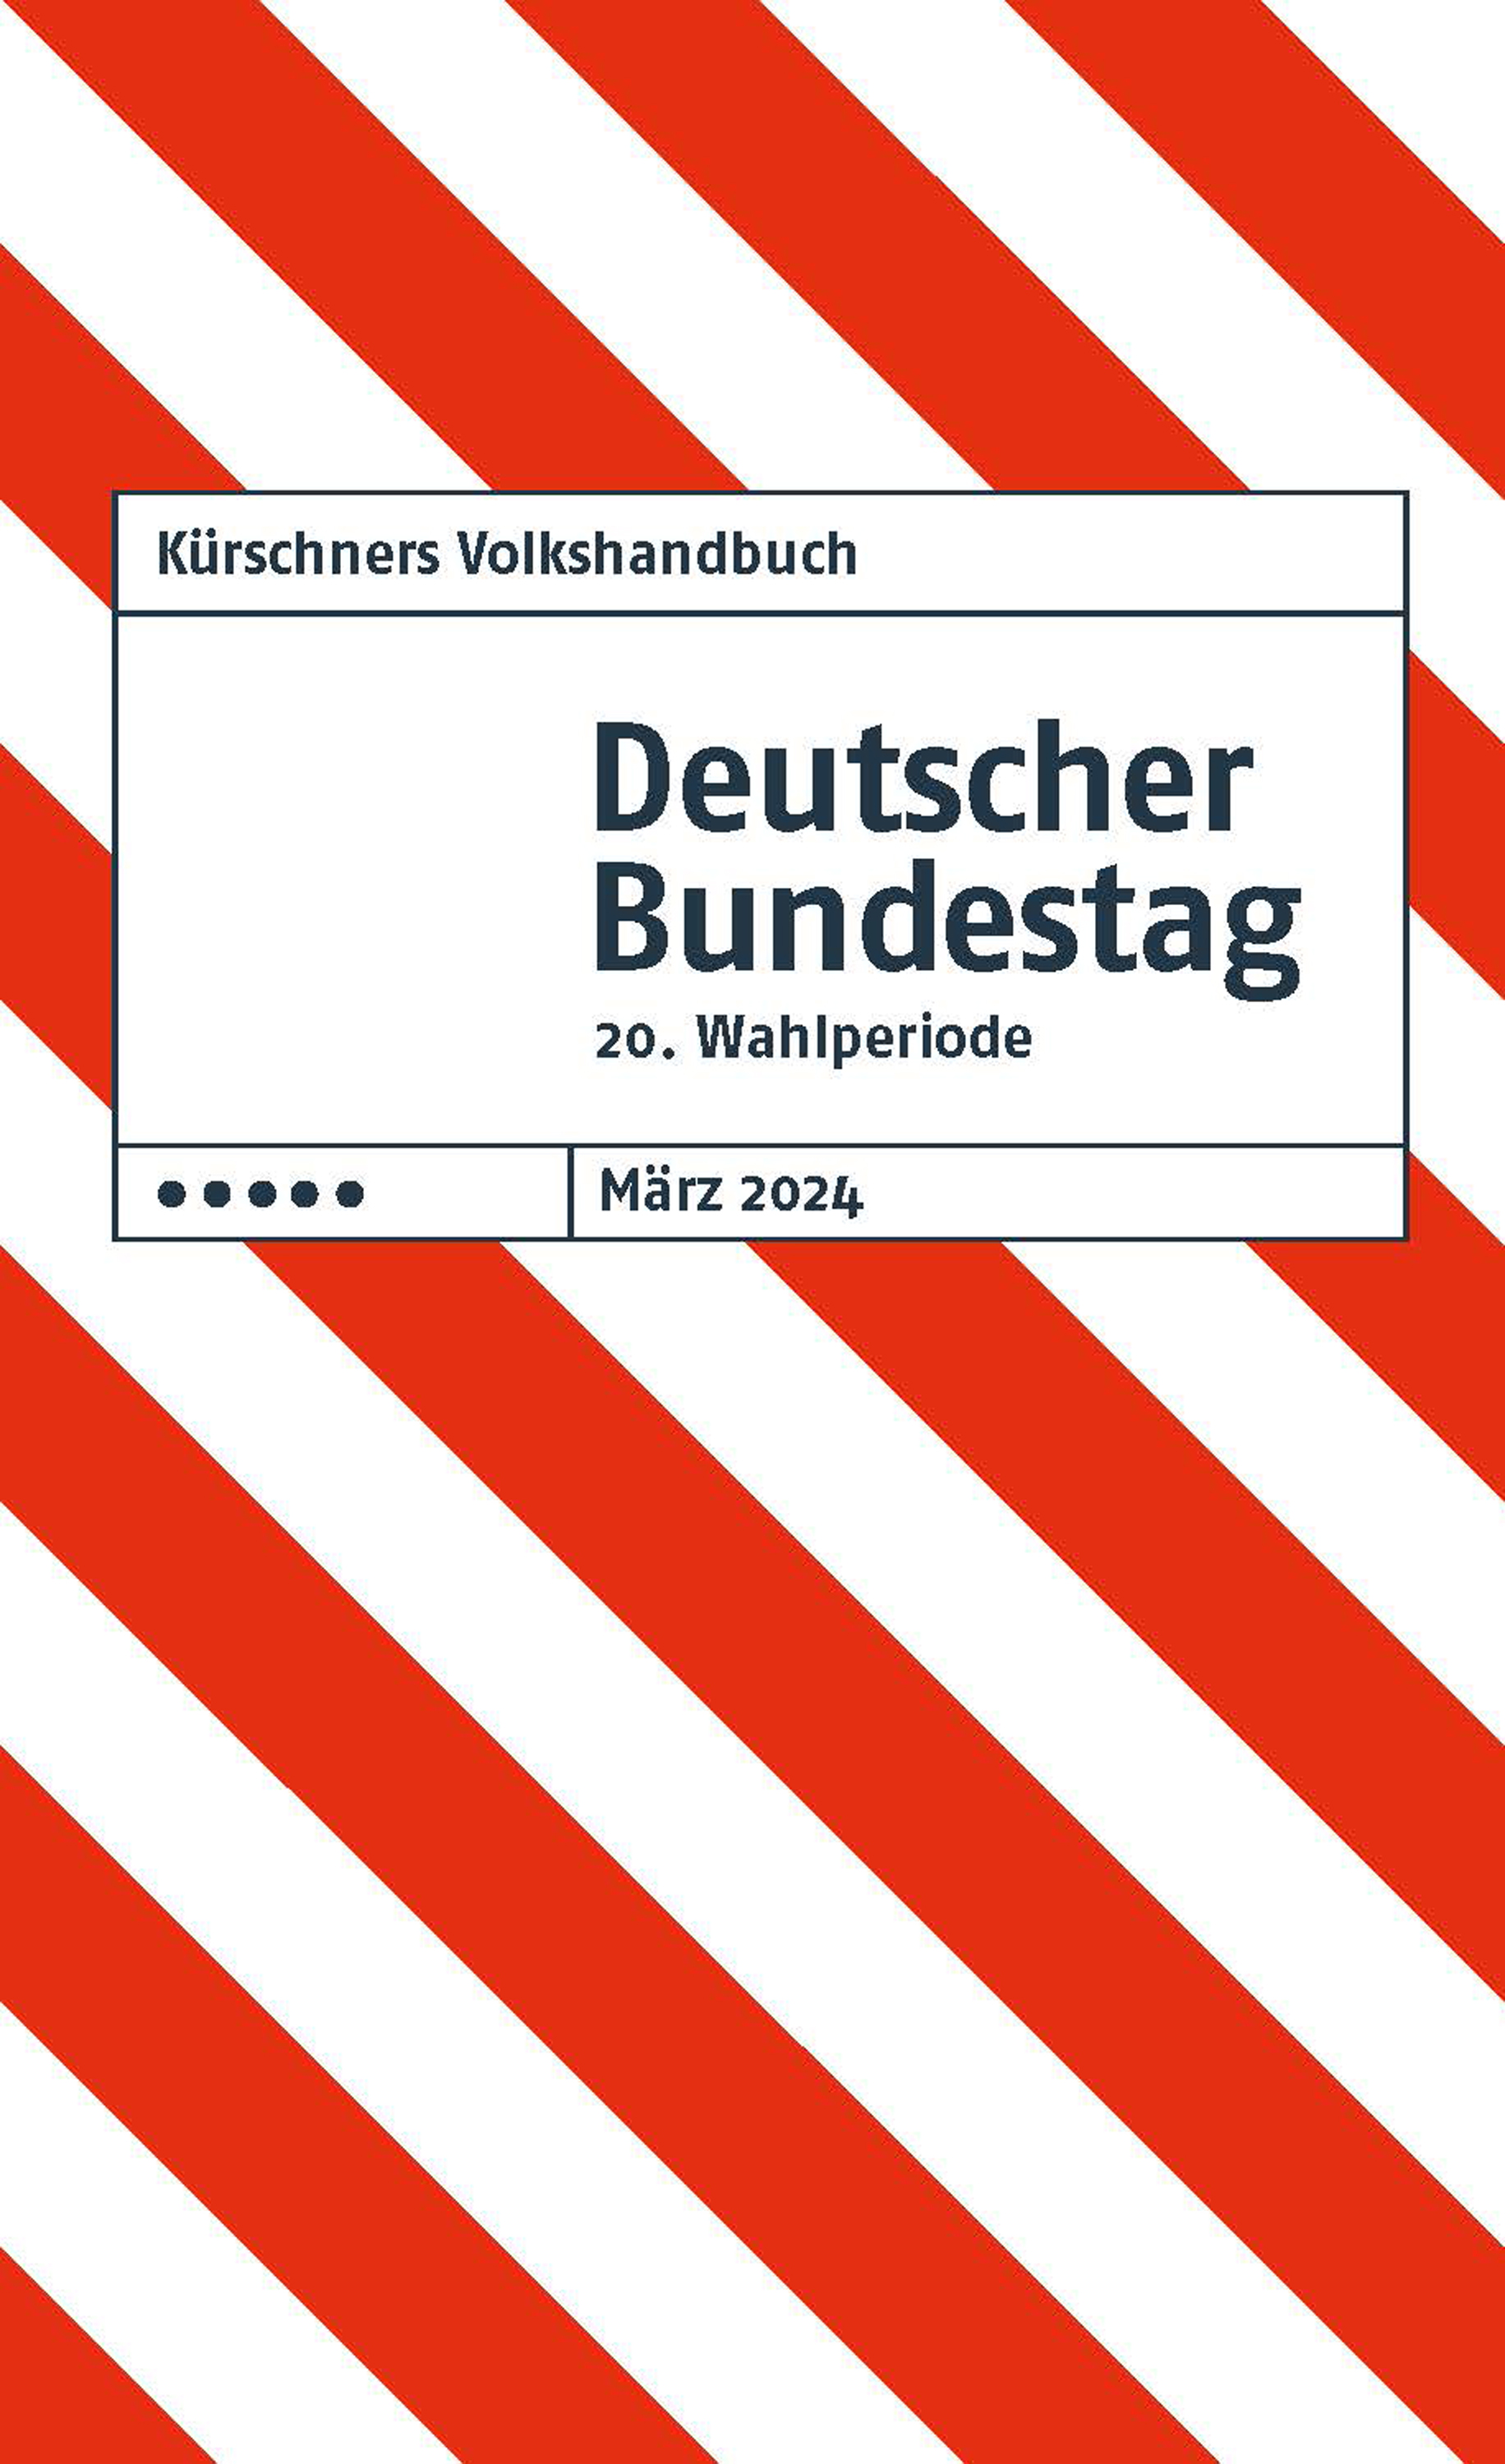 Kürschners Volkshandbuch: Deutscher Bundestag (20. Wahlperiode)